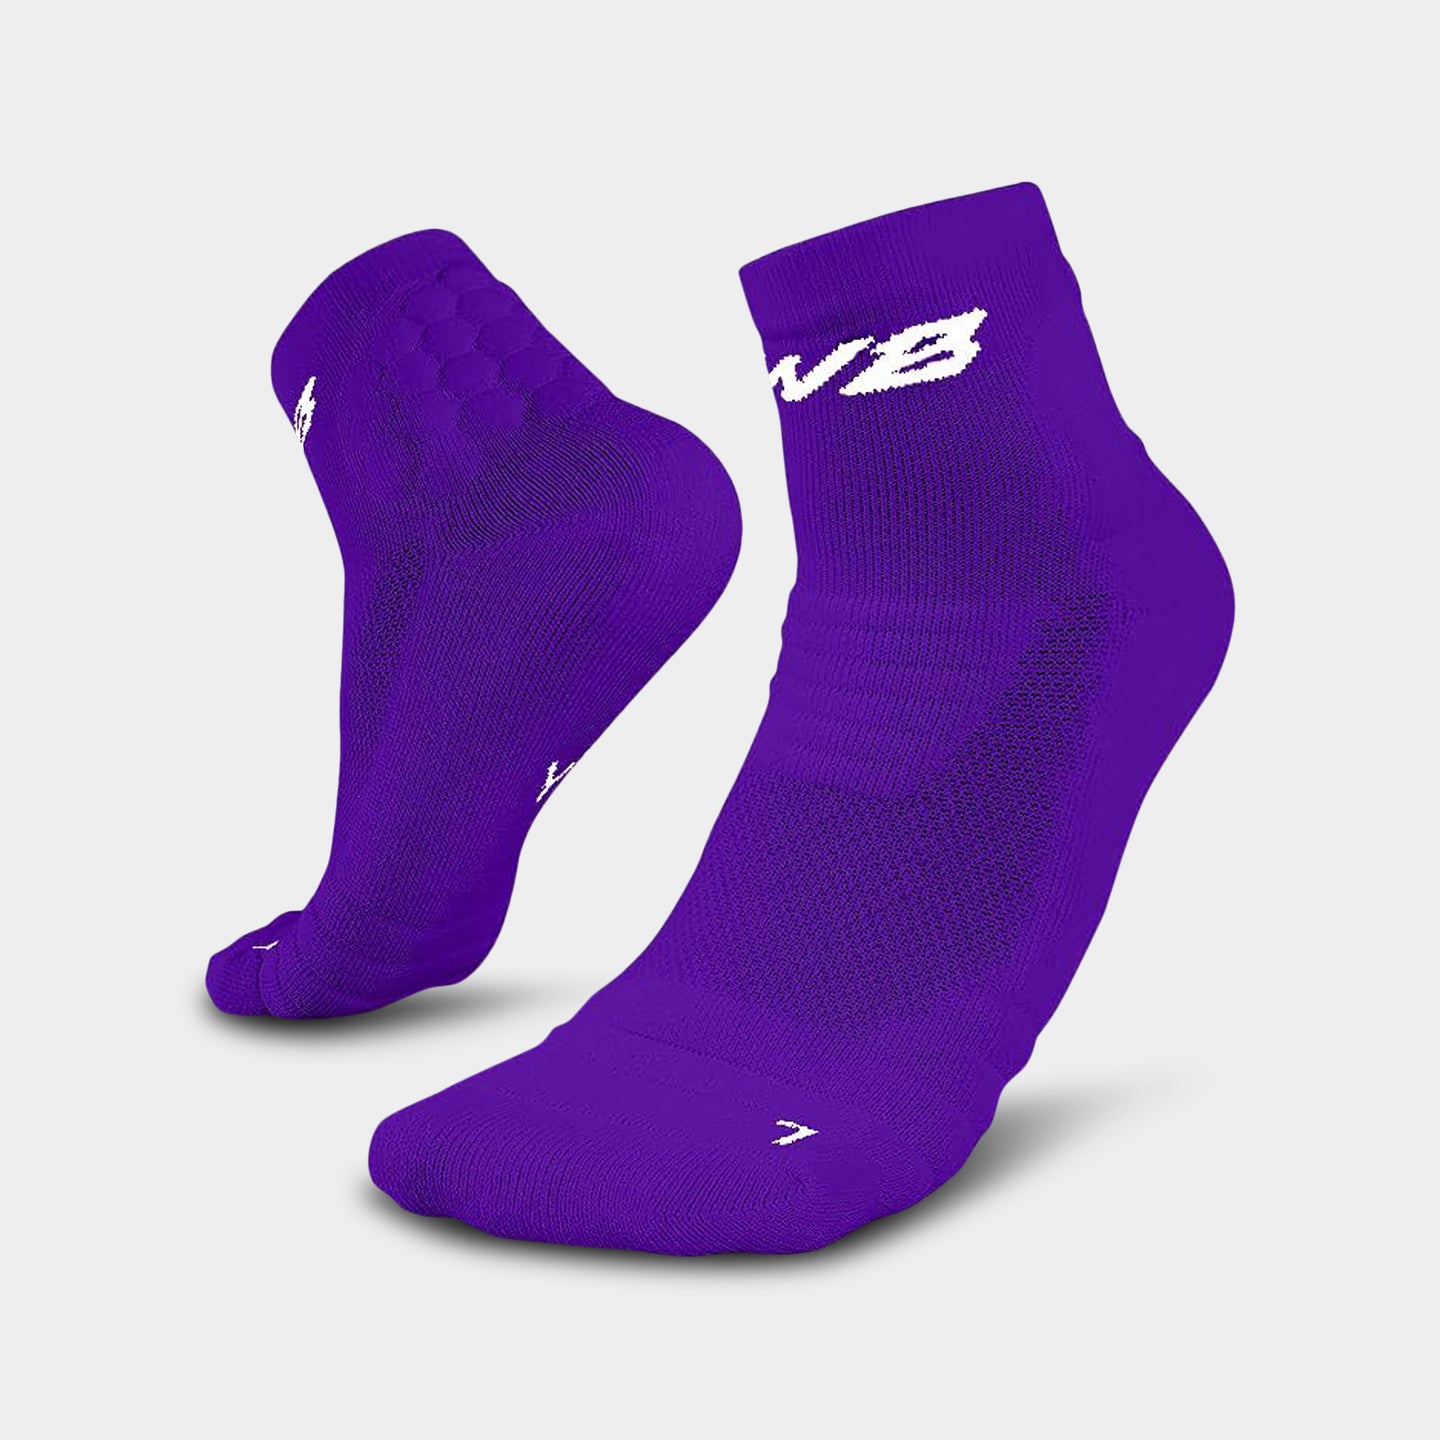 We Ball Sports Padded Quarter Socks, XL, Purple A1